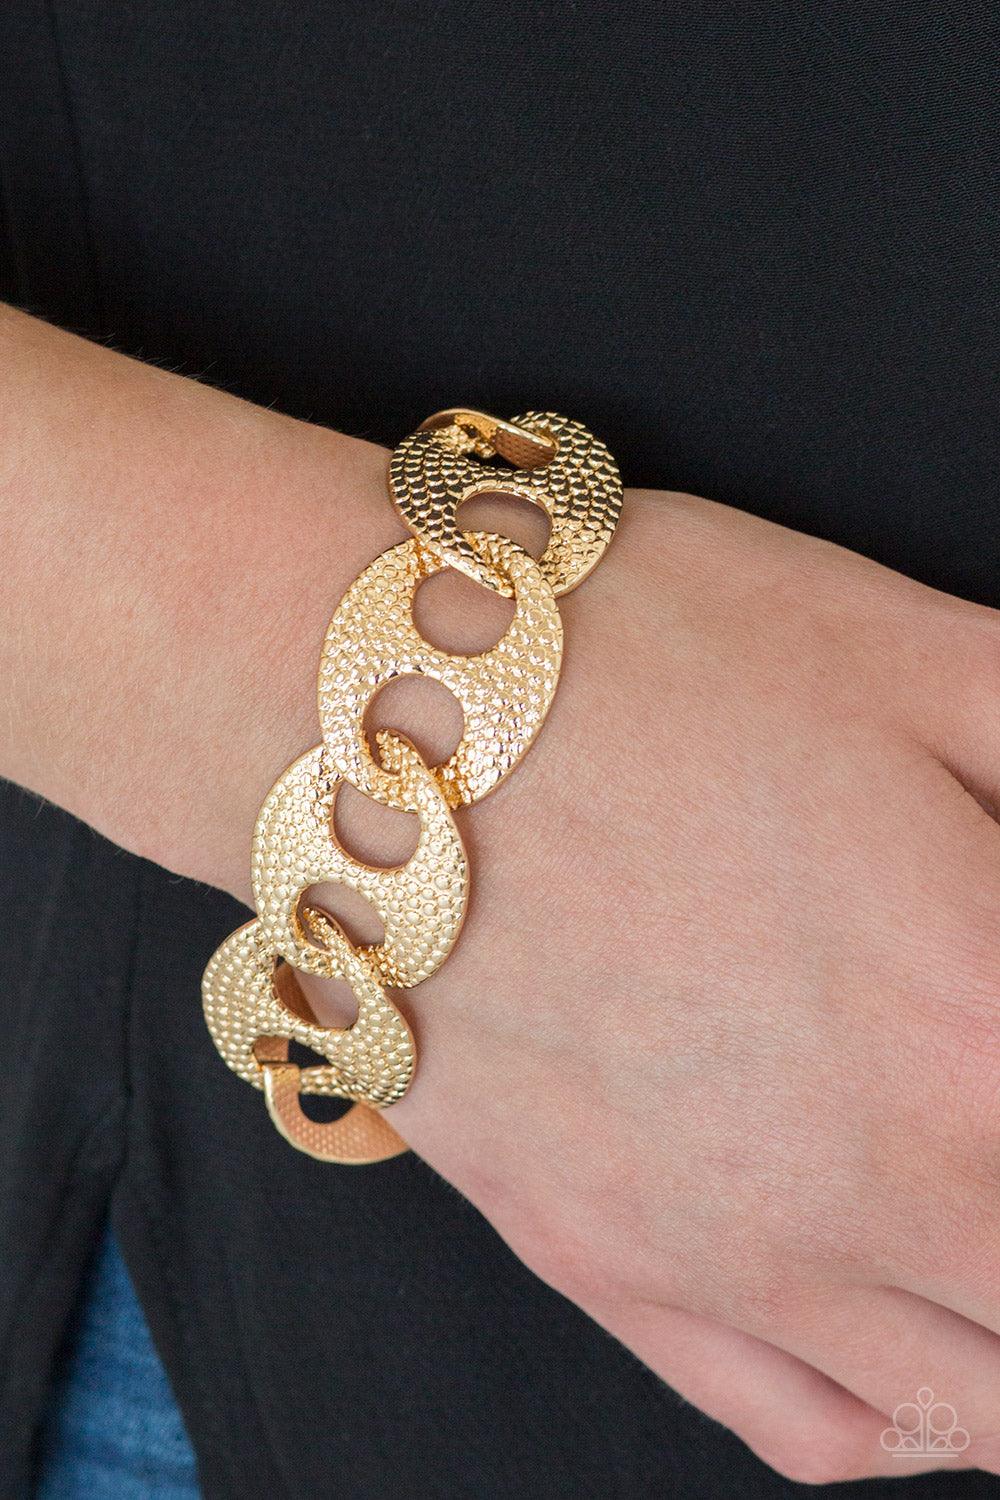 Casual Connoisseur Gold Bracelet - Jewelry By Bretta - Jewelry by Bretta